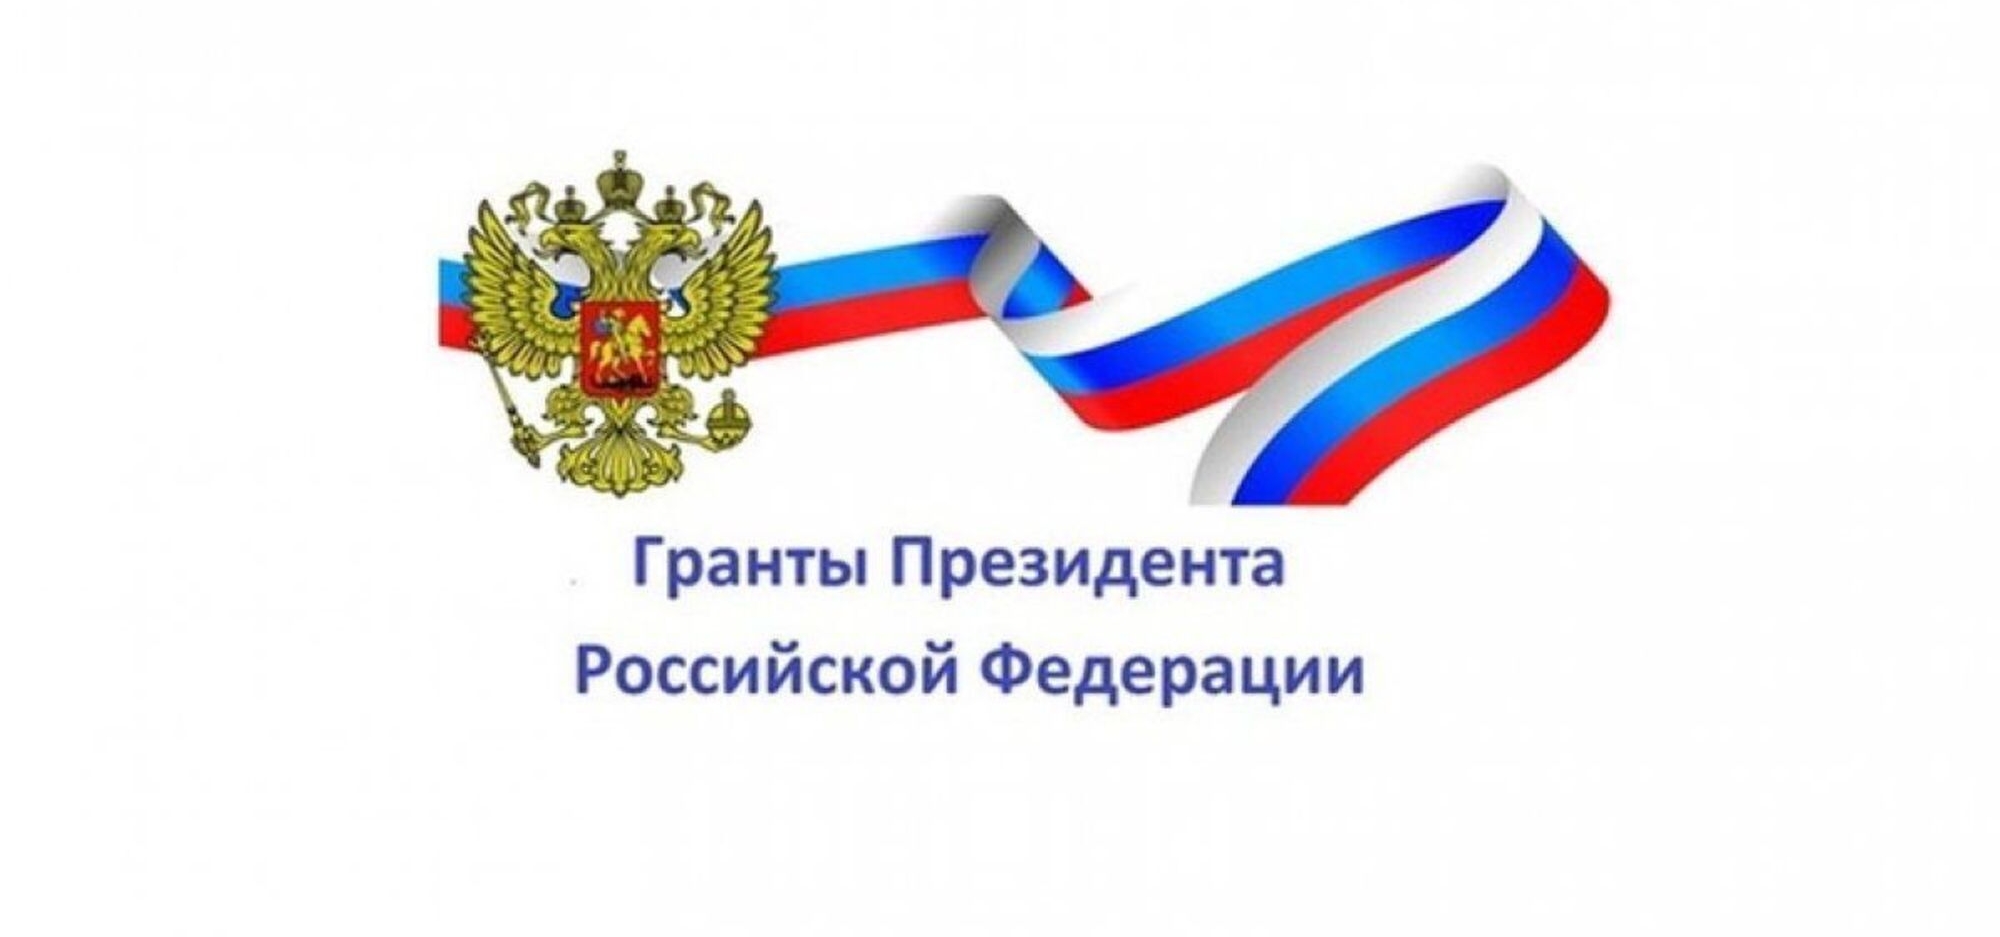 Продлен прием заявок на конкурс грантов Президента России